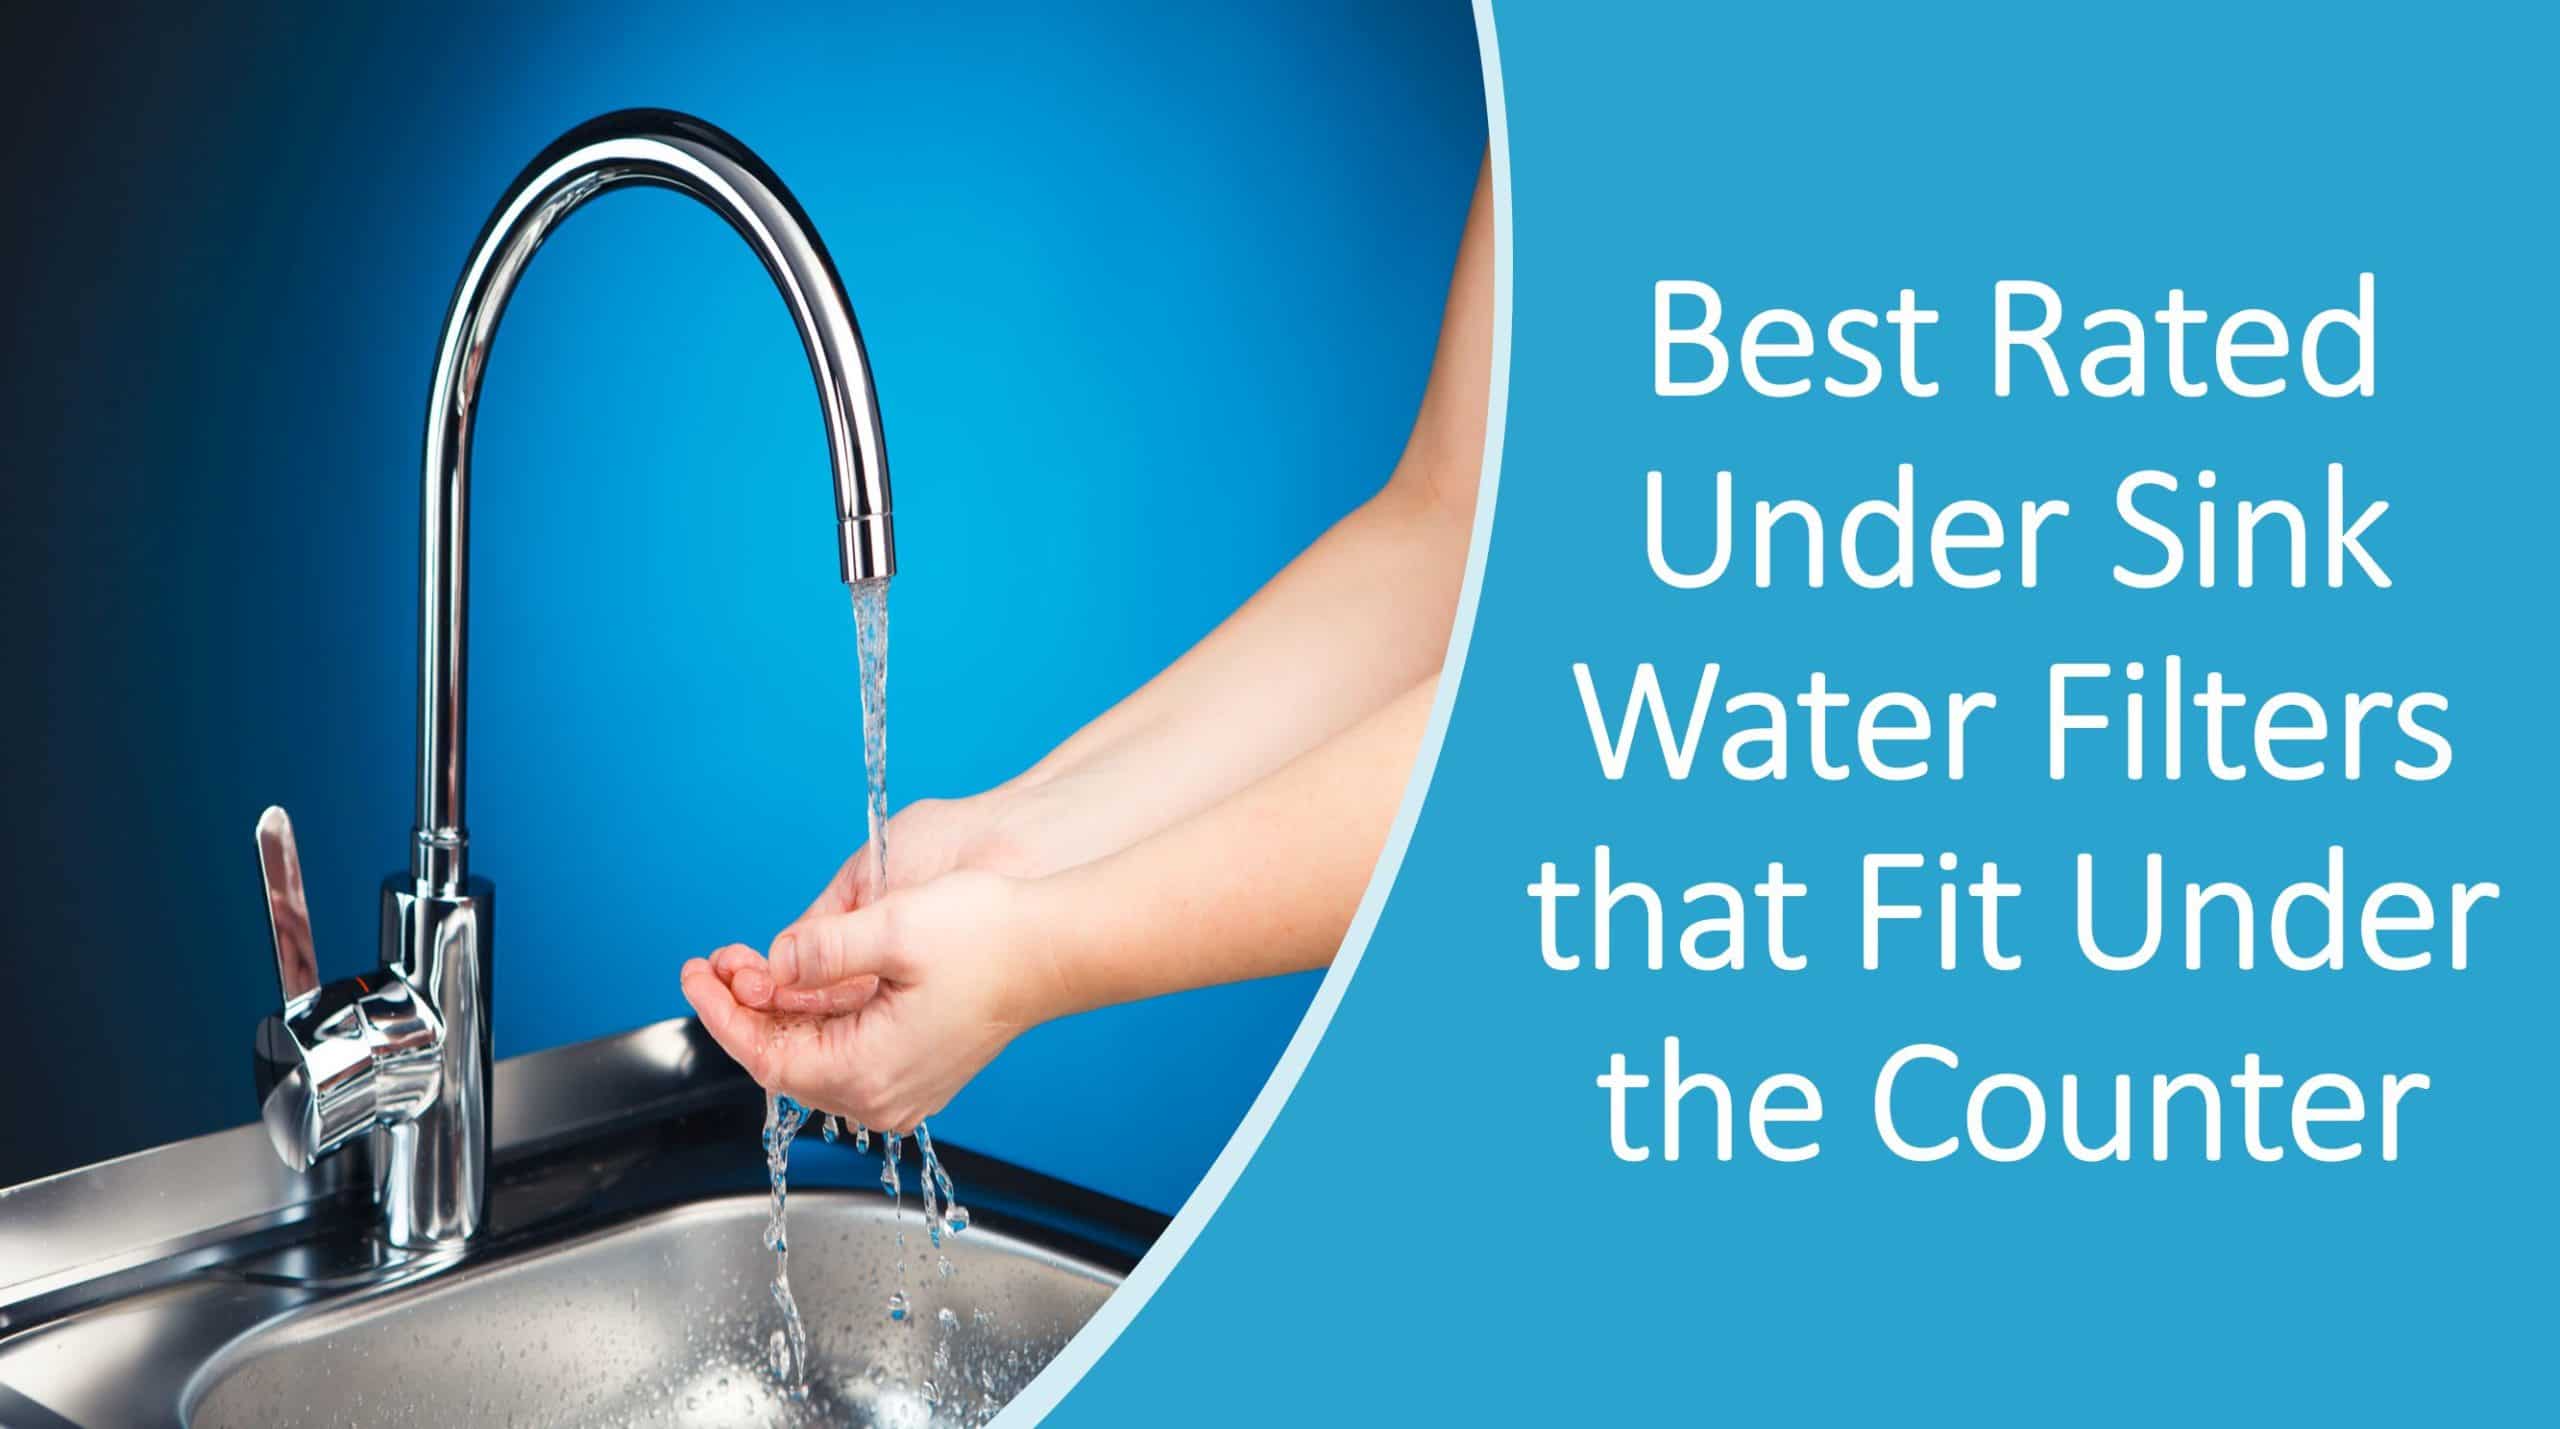 Best Under Sink Water Filter Systems